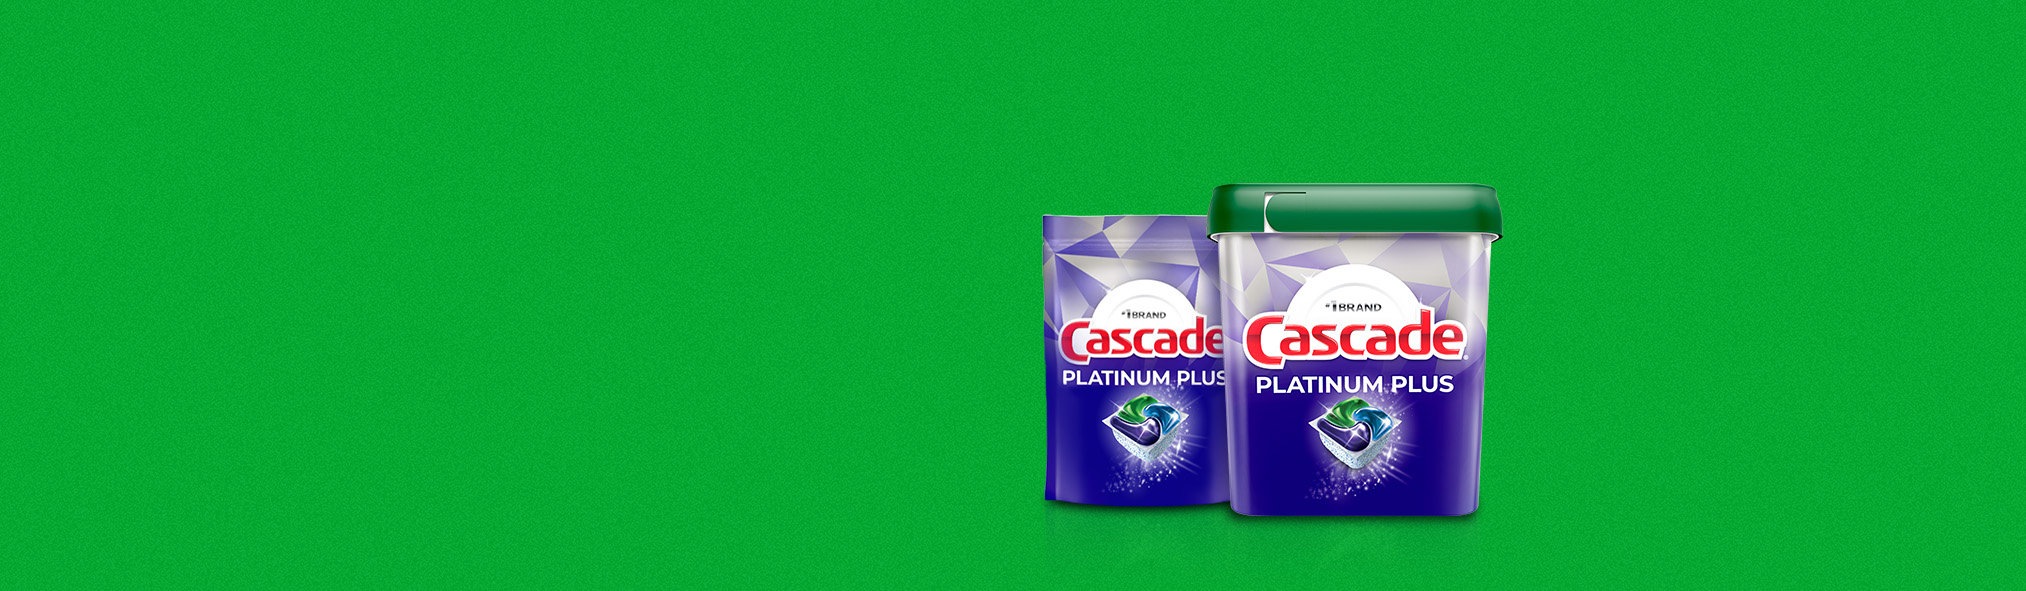 Cascade Platinum Plus Products
